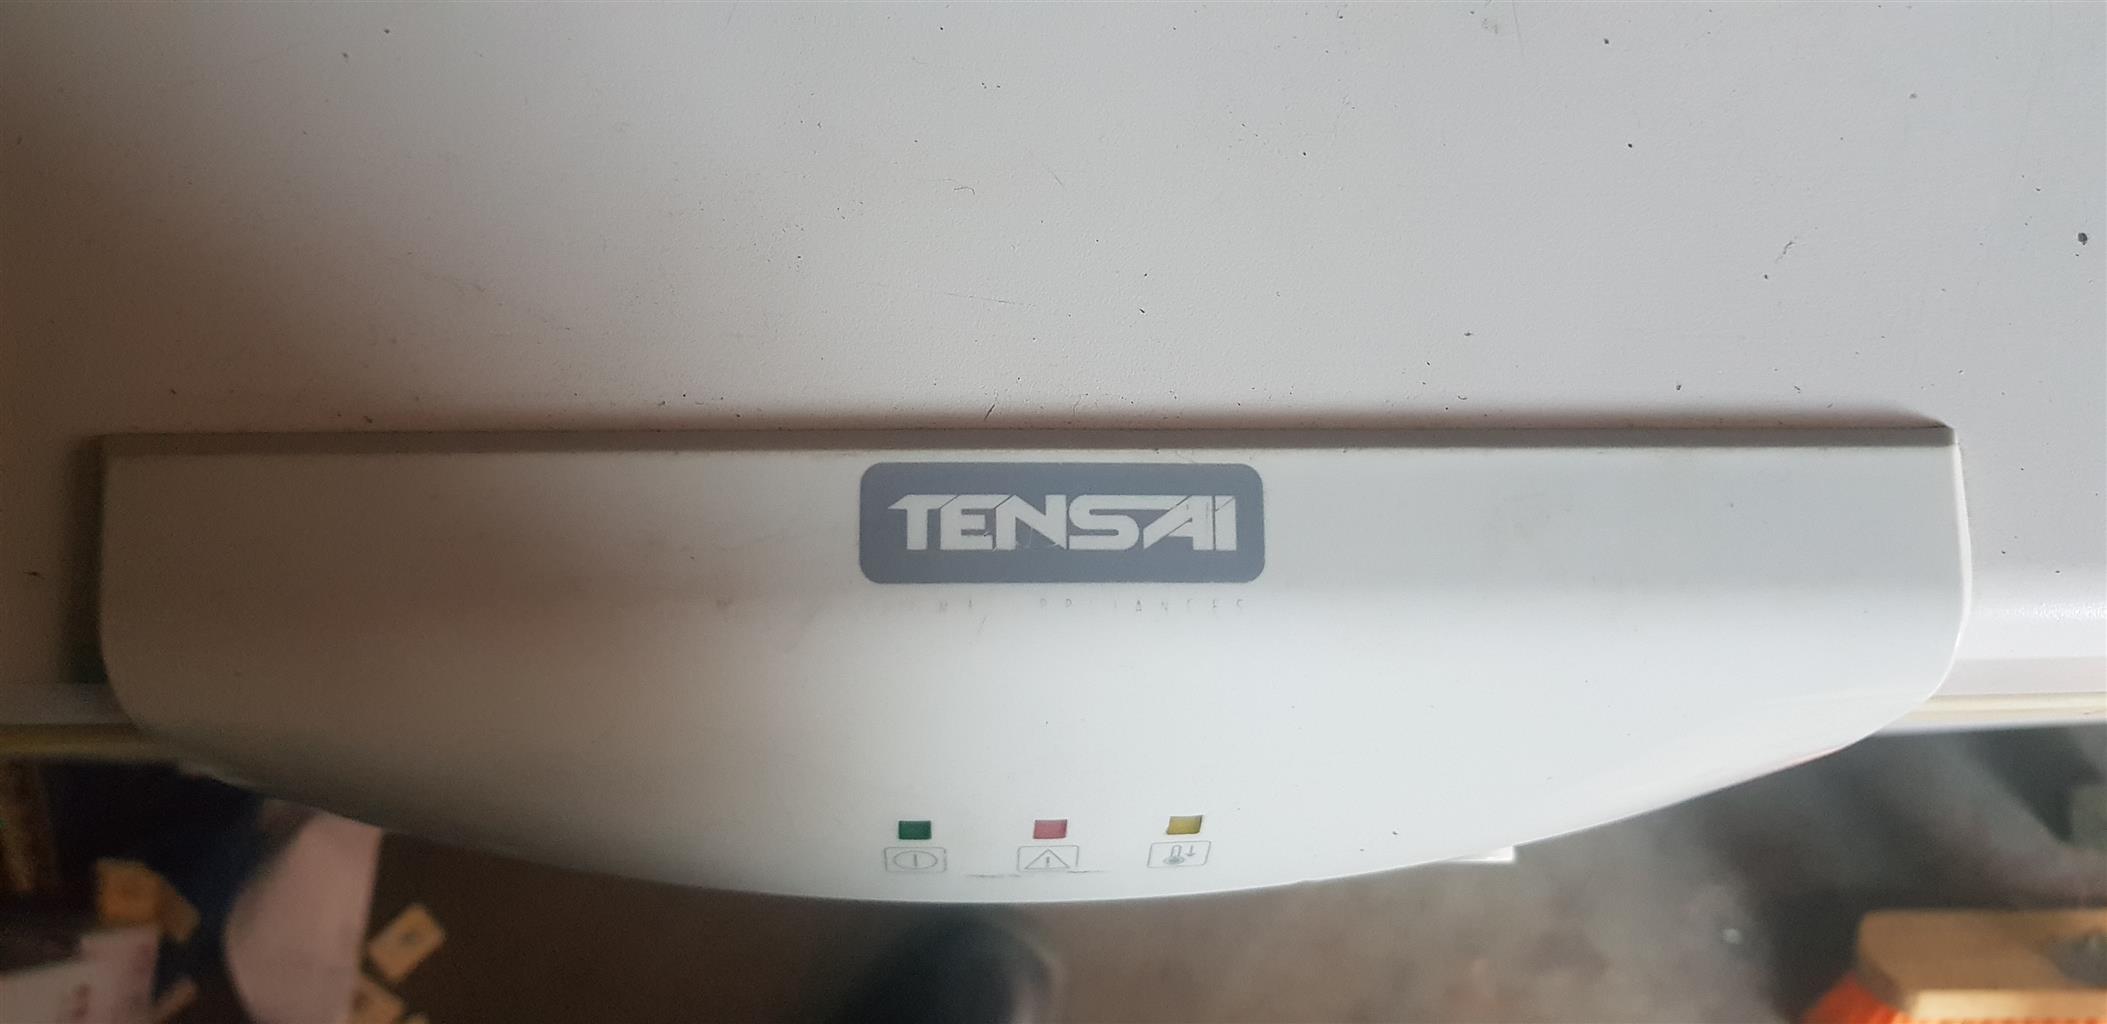 Tensai freezer